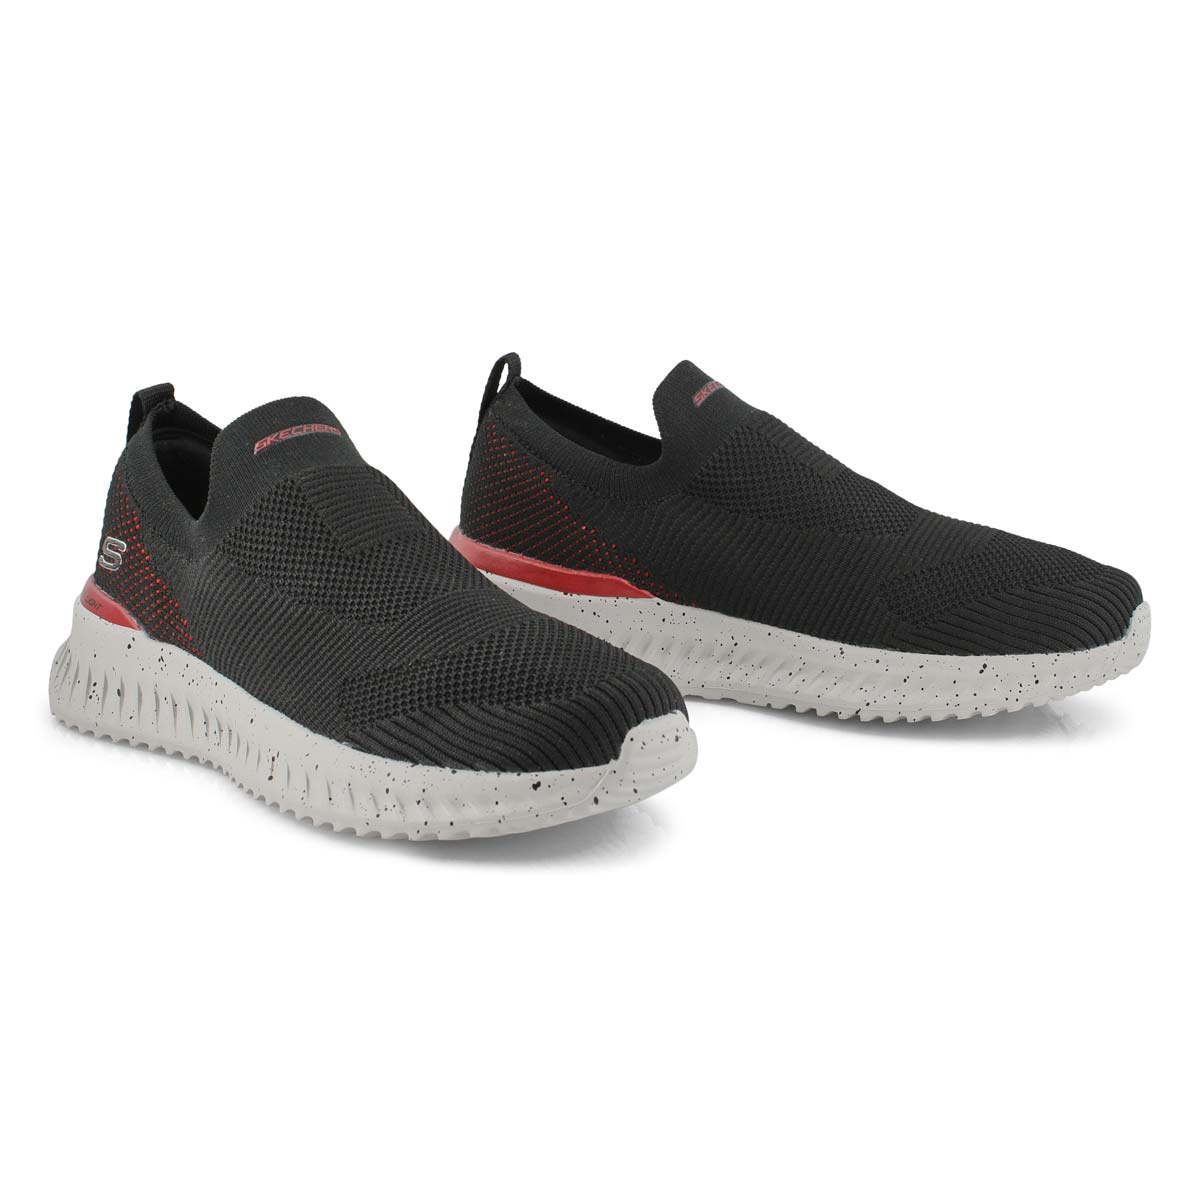 Men's Matera 2.0 Sneakers - Black/Red